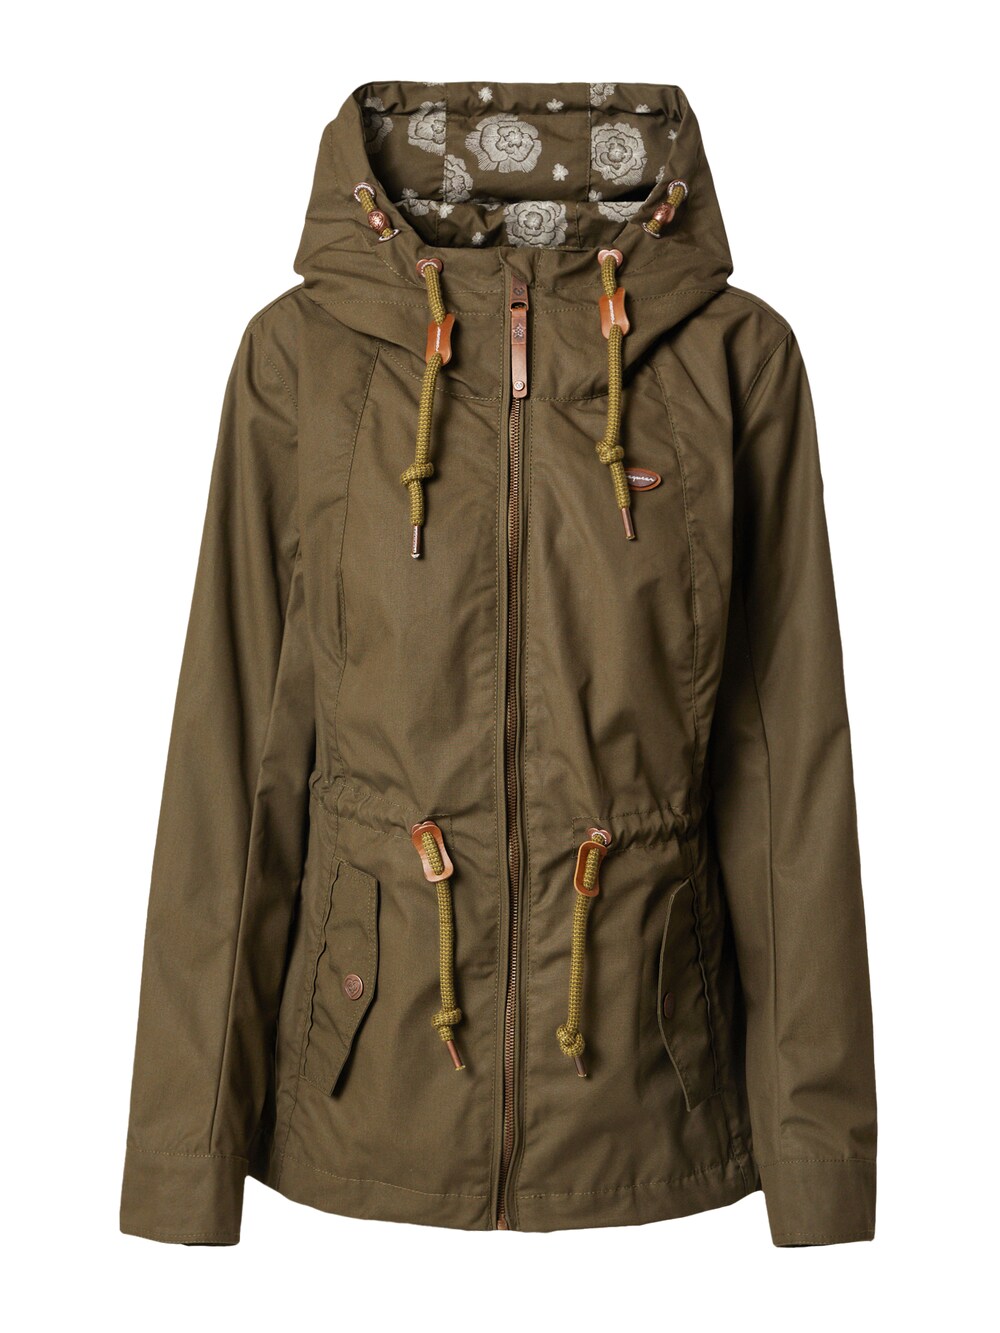 Межсезонная куртка Ragwear MONADIS, оливковый межсезонная куртка ragwear margge оливковый